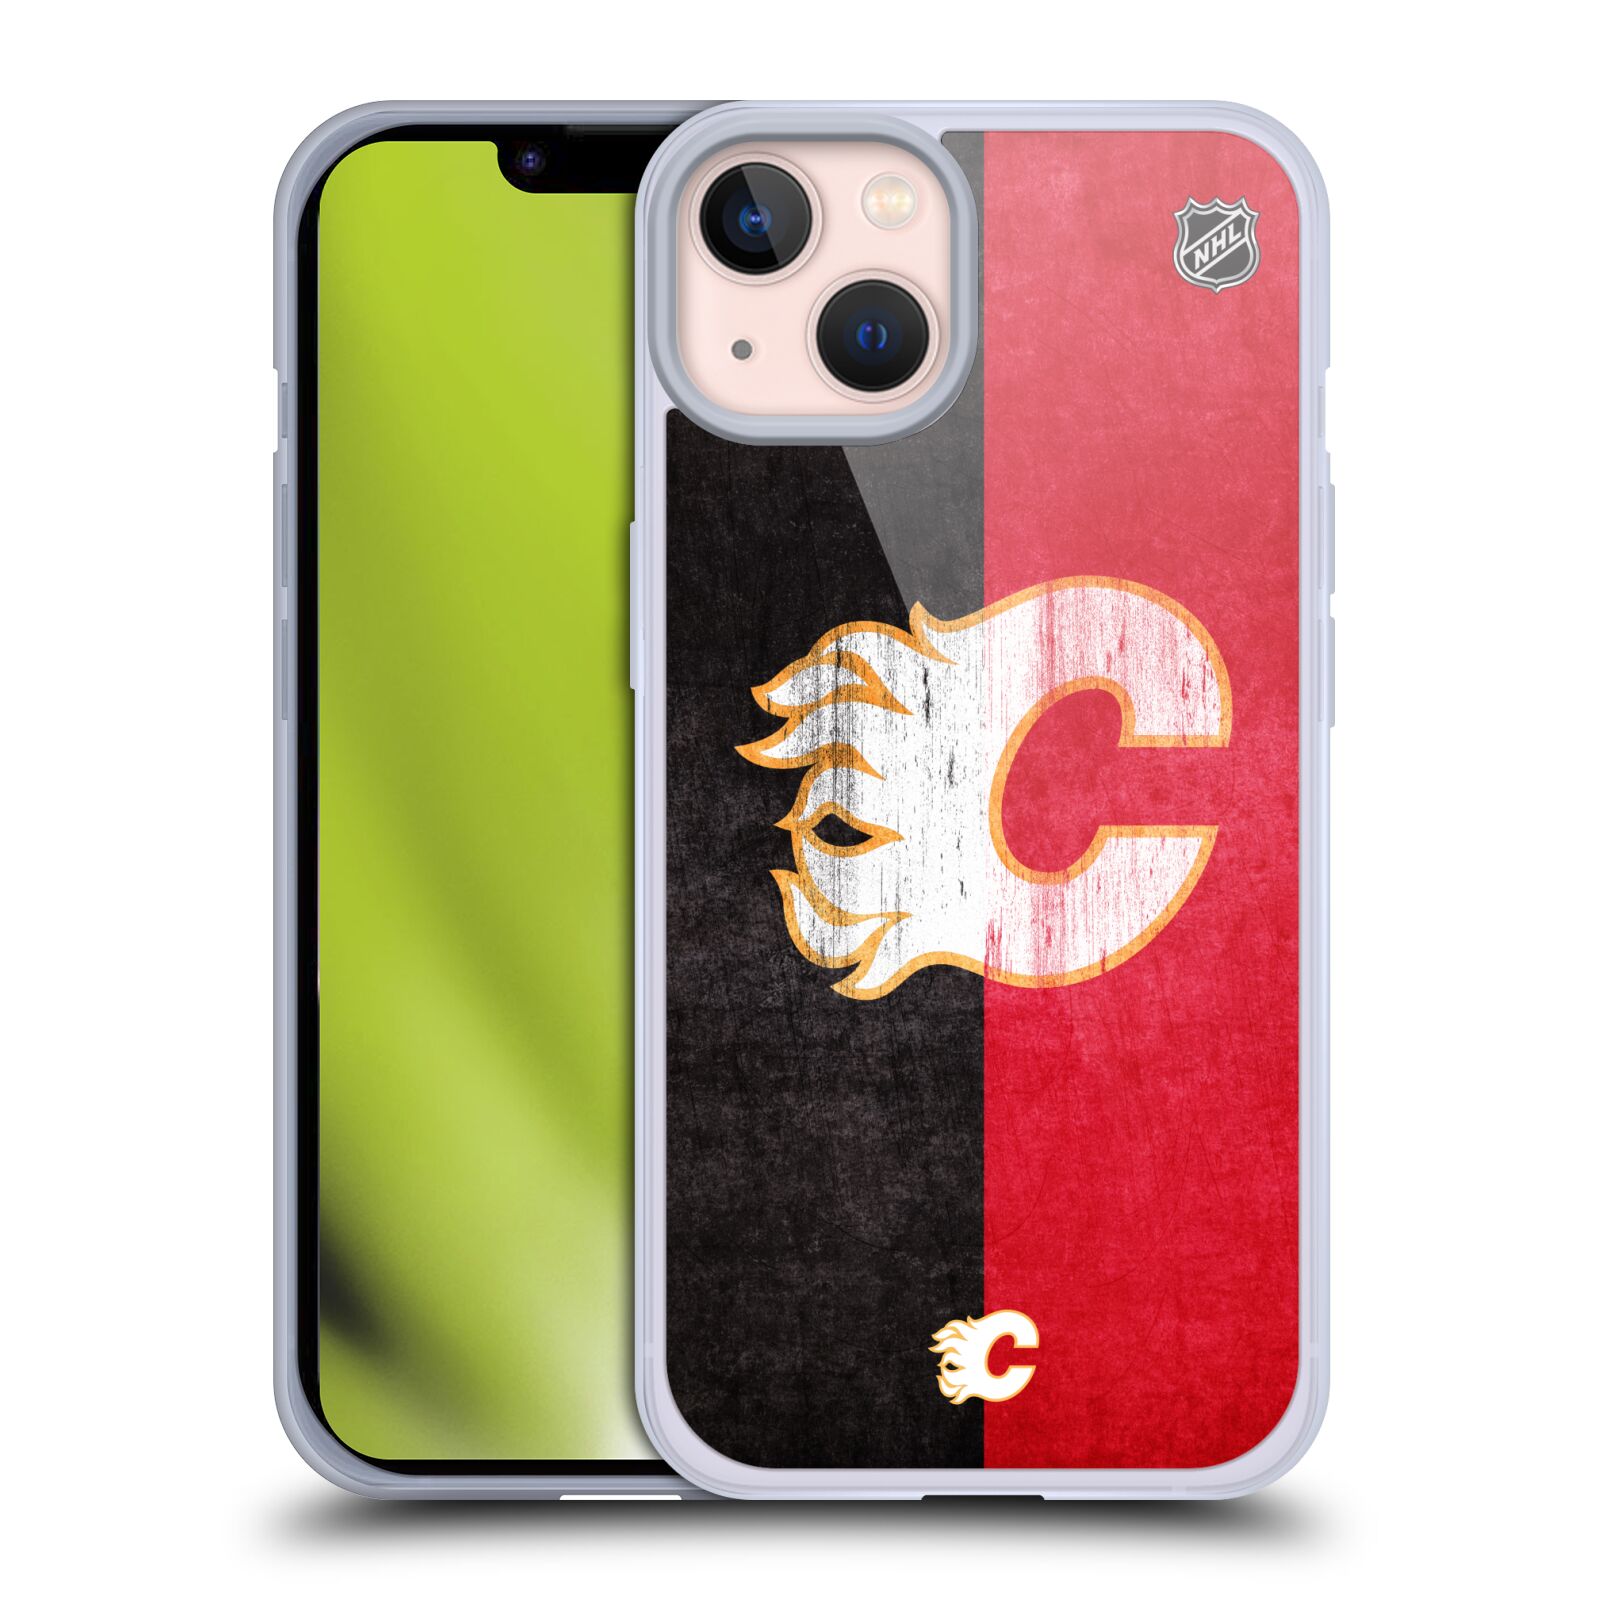 Silikonové pouzdro na mobil Apple iPhone 13 - NHL - Půlené logo Calgary Flames (Silikonový kryt, obal, pouzdro na mobilní telefon Apple iPhone 13 s licencovaným motivem NHL - Půlené logo Calgary Flames)